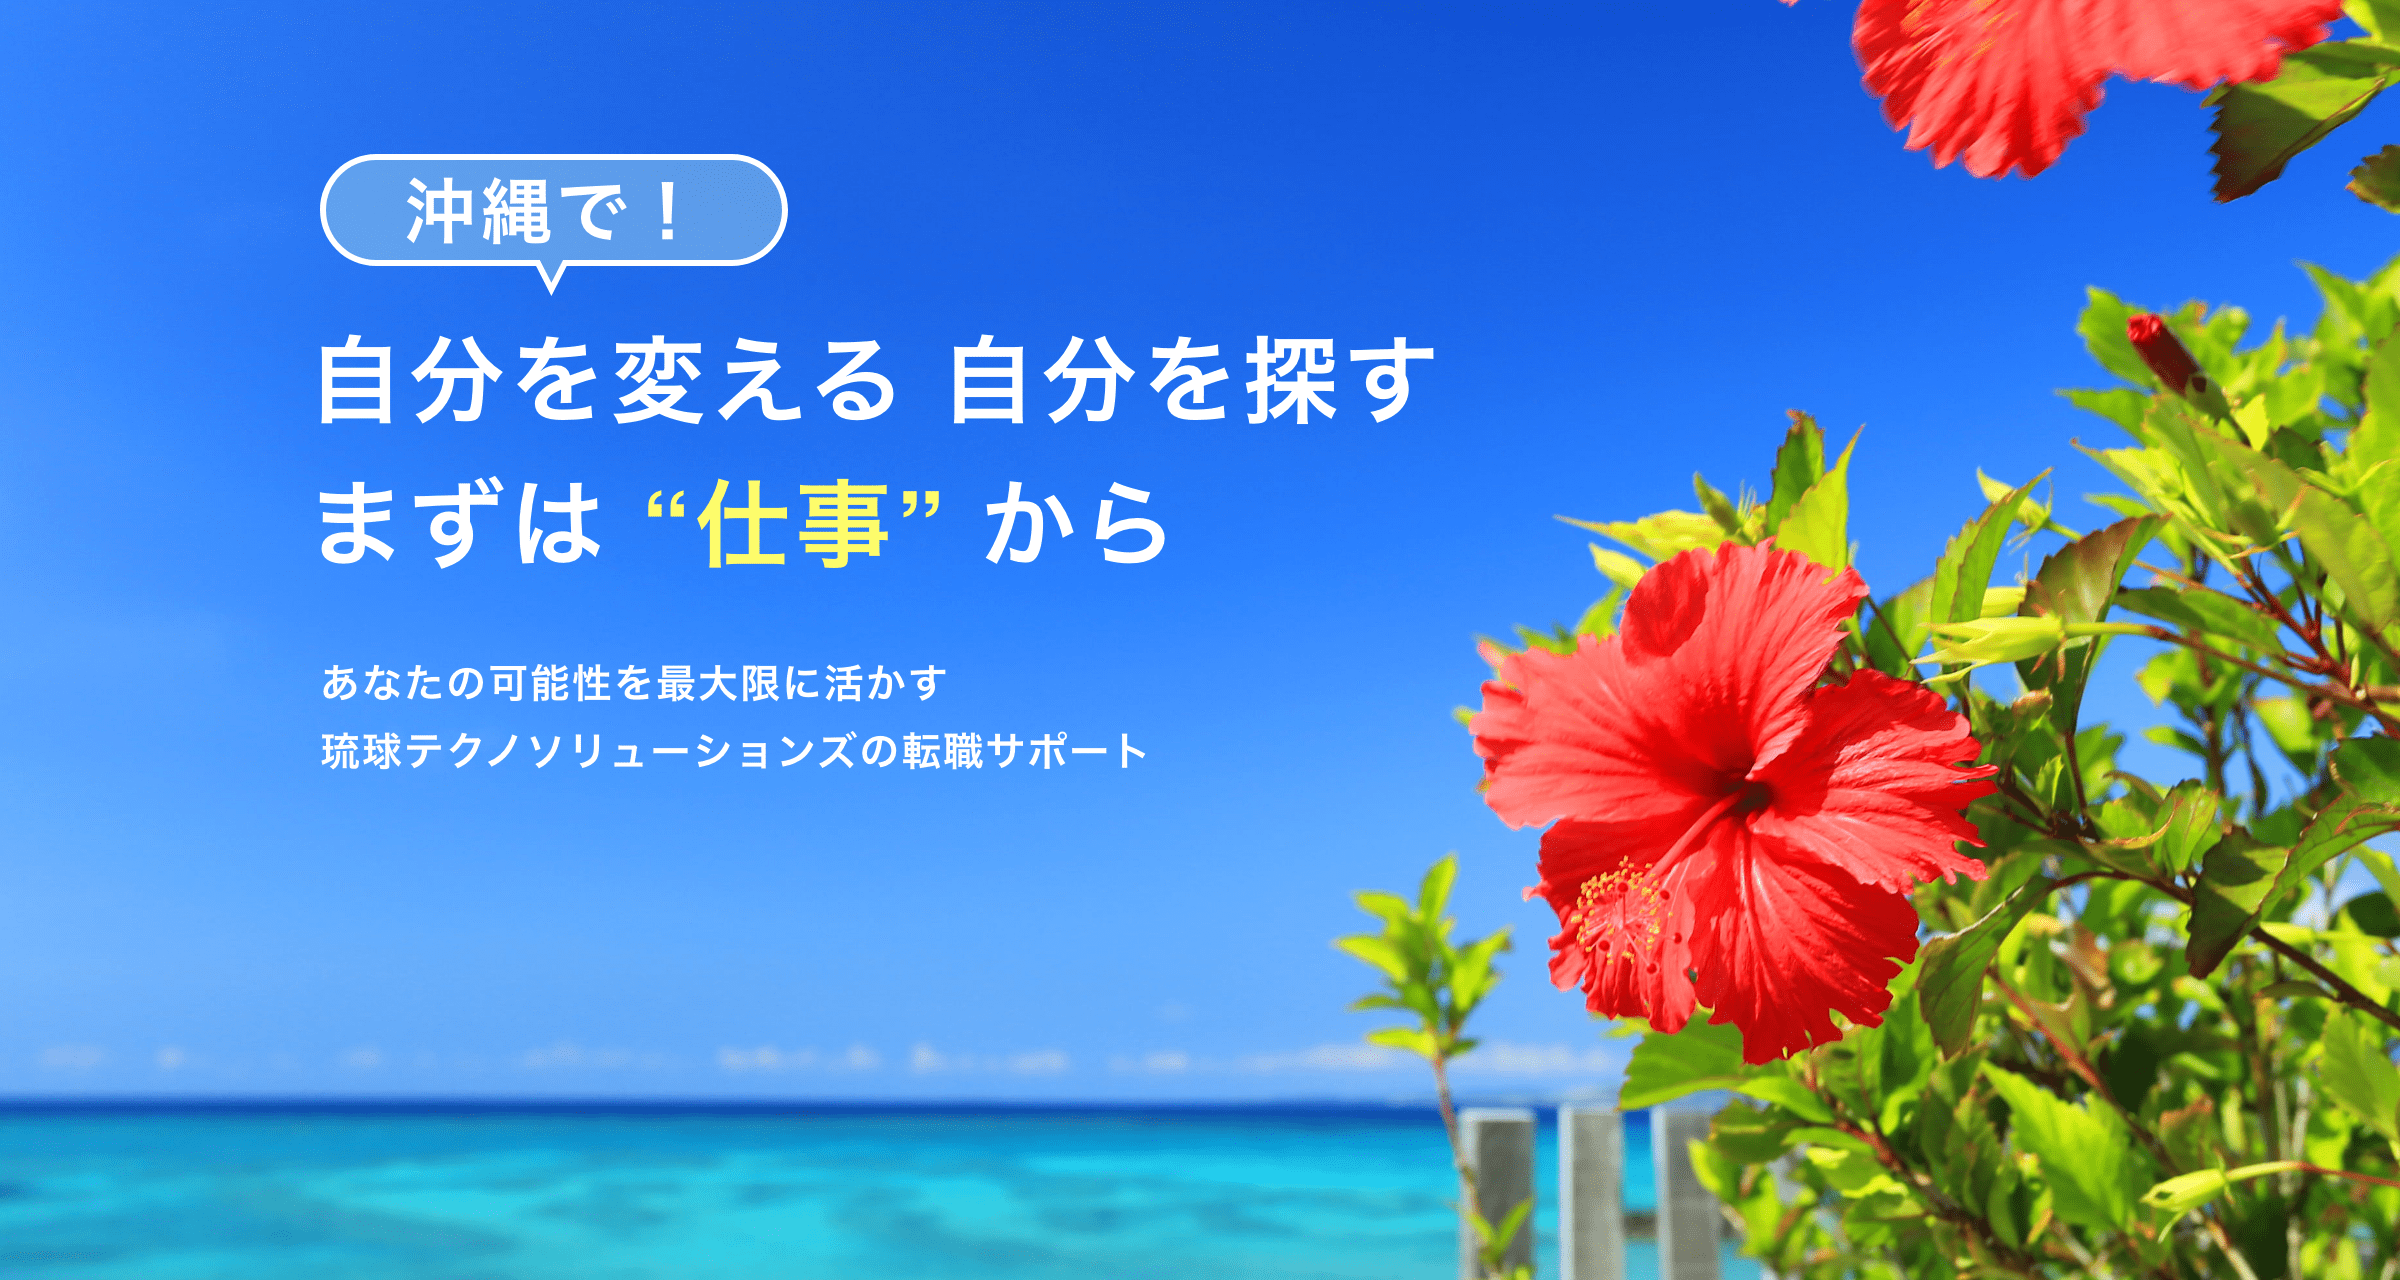 沖縄で転職するなら、琉球テクノソリューションズの転職サービス